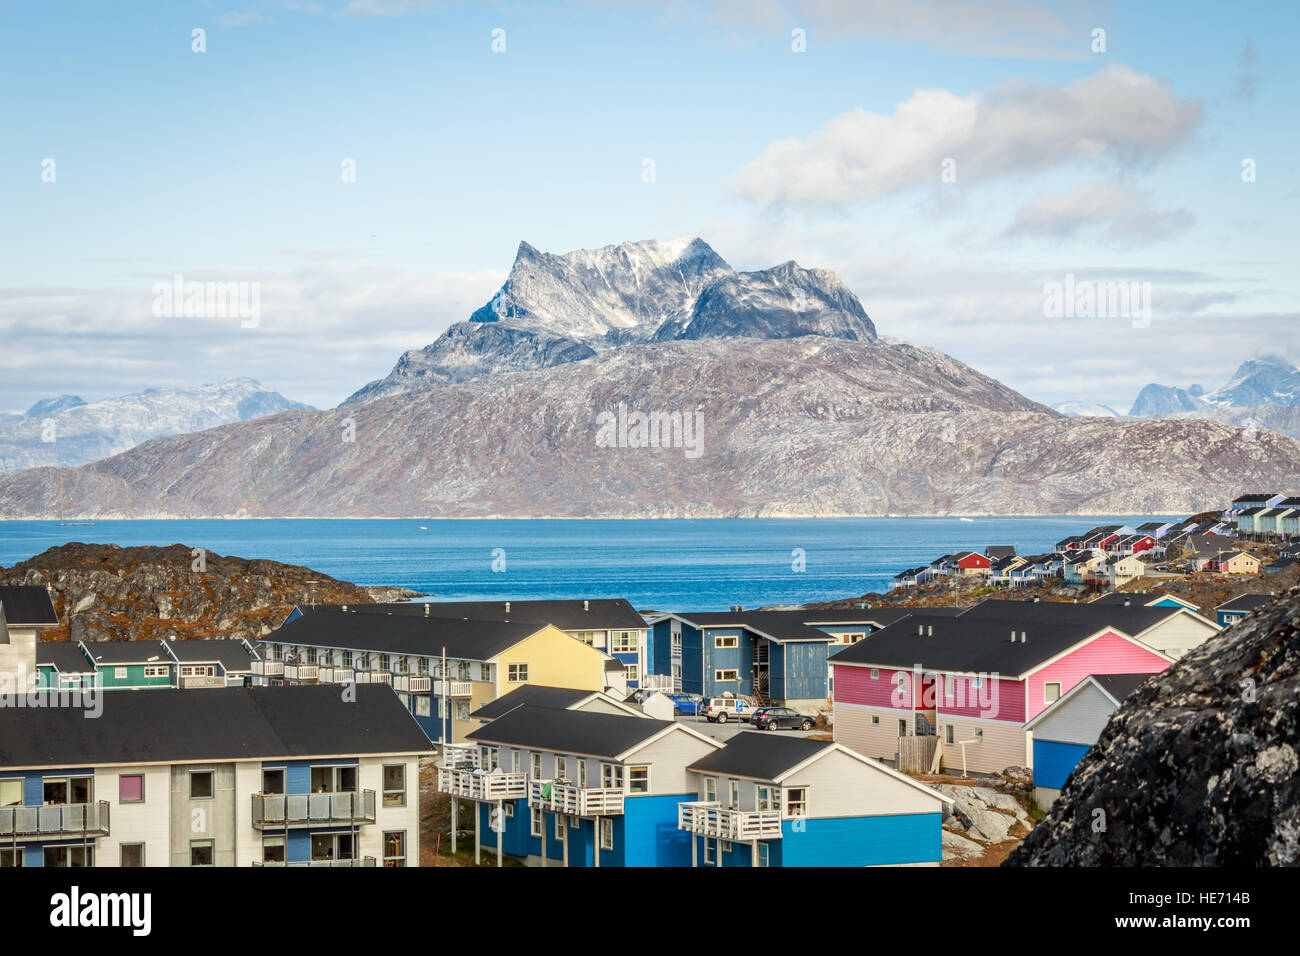 Les blocs colorés vivant de la ville de Nuuk au fjord, en toile de fond la montagne Sermitsiaq, Groenland Banque D'Images